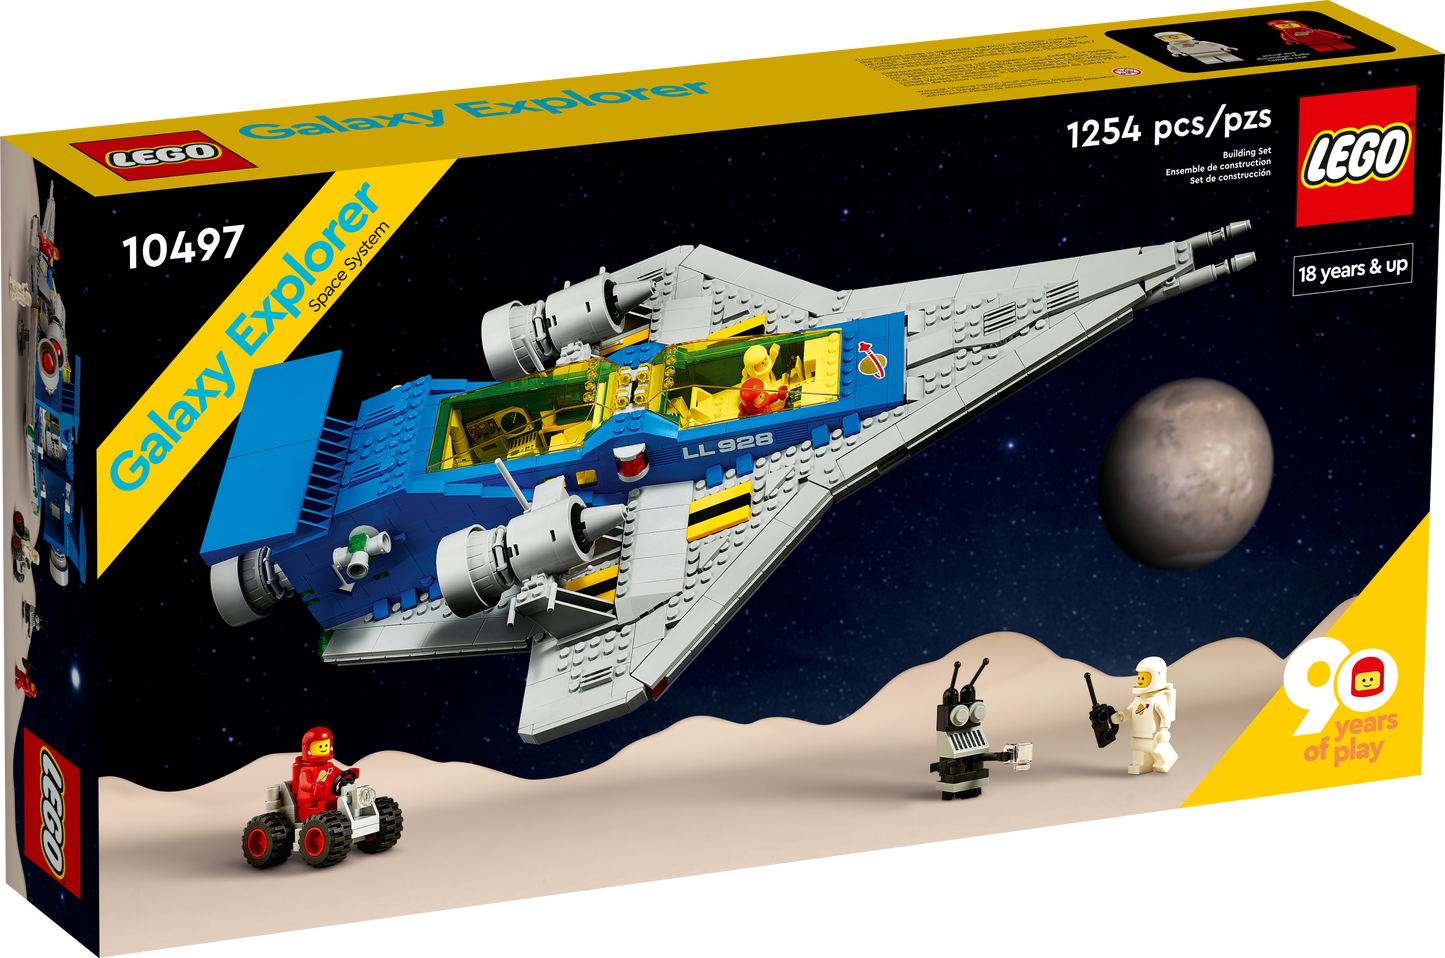 10497 LEGO Creator - Esploratore galattico